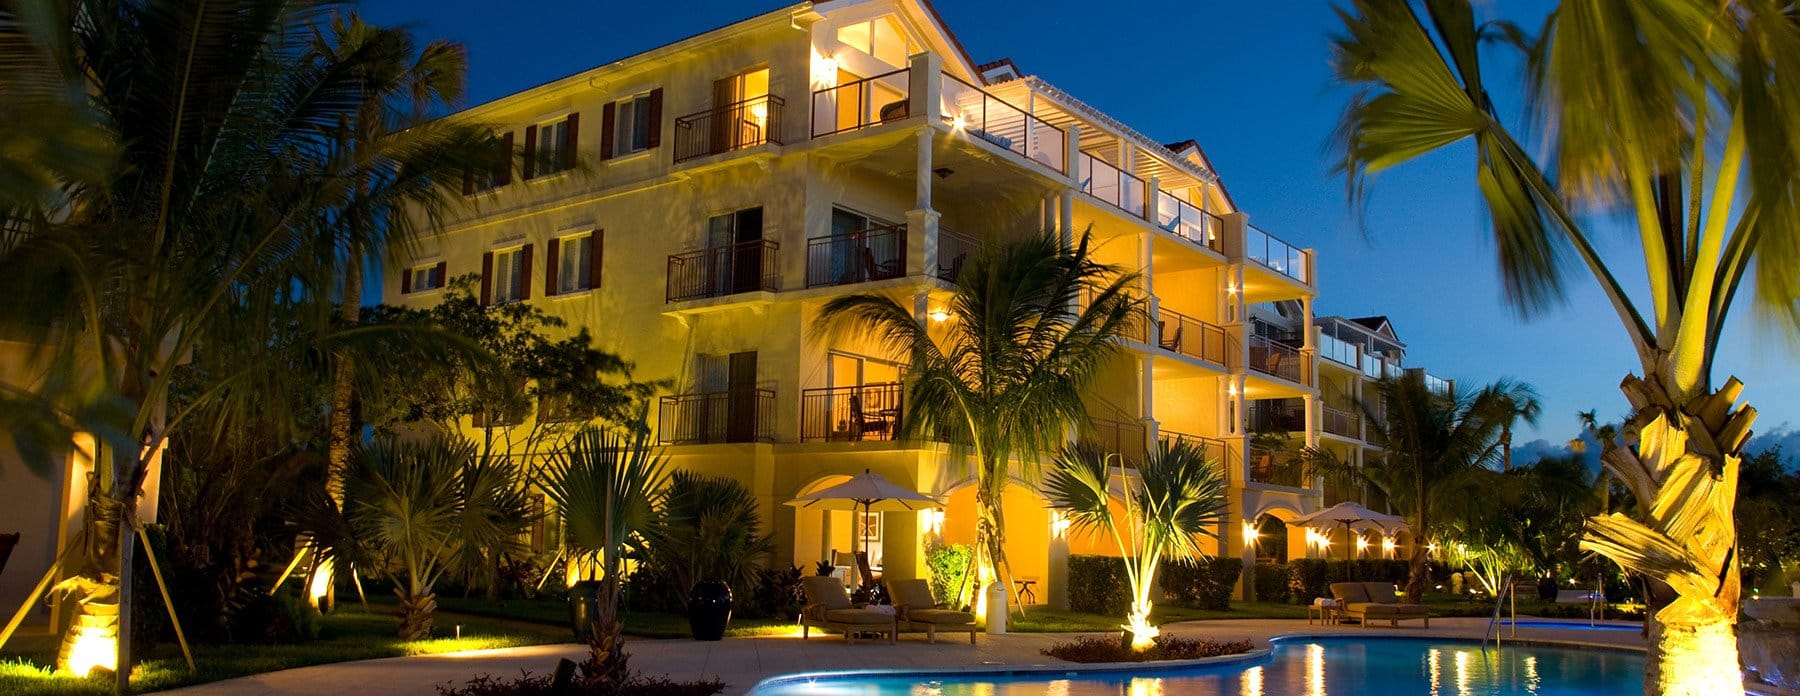 villa del mar resort pool area at night